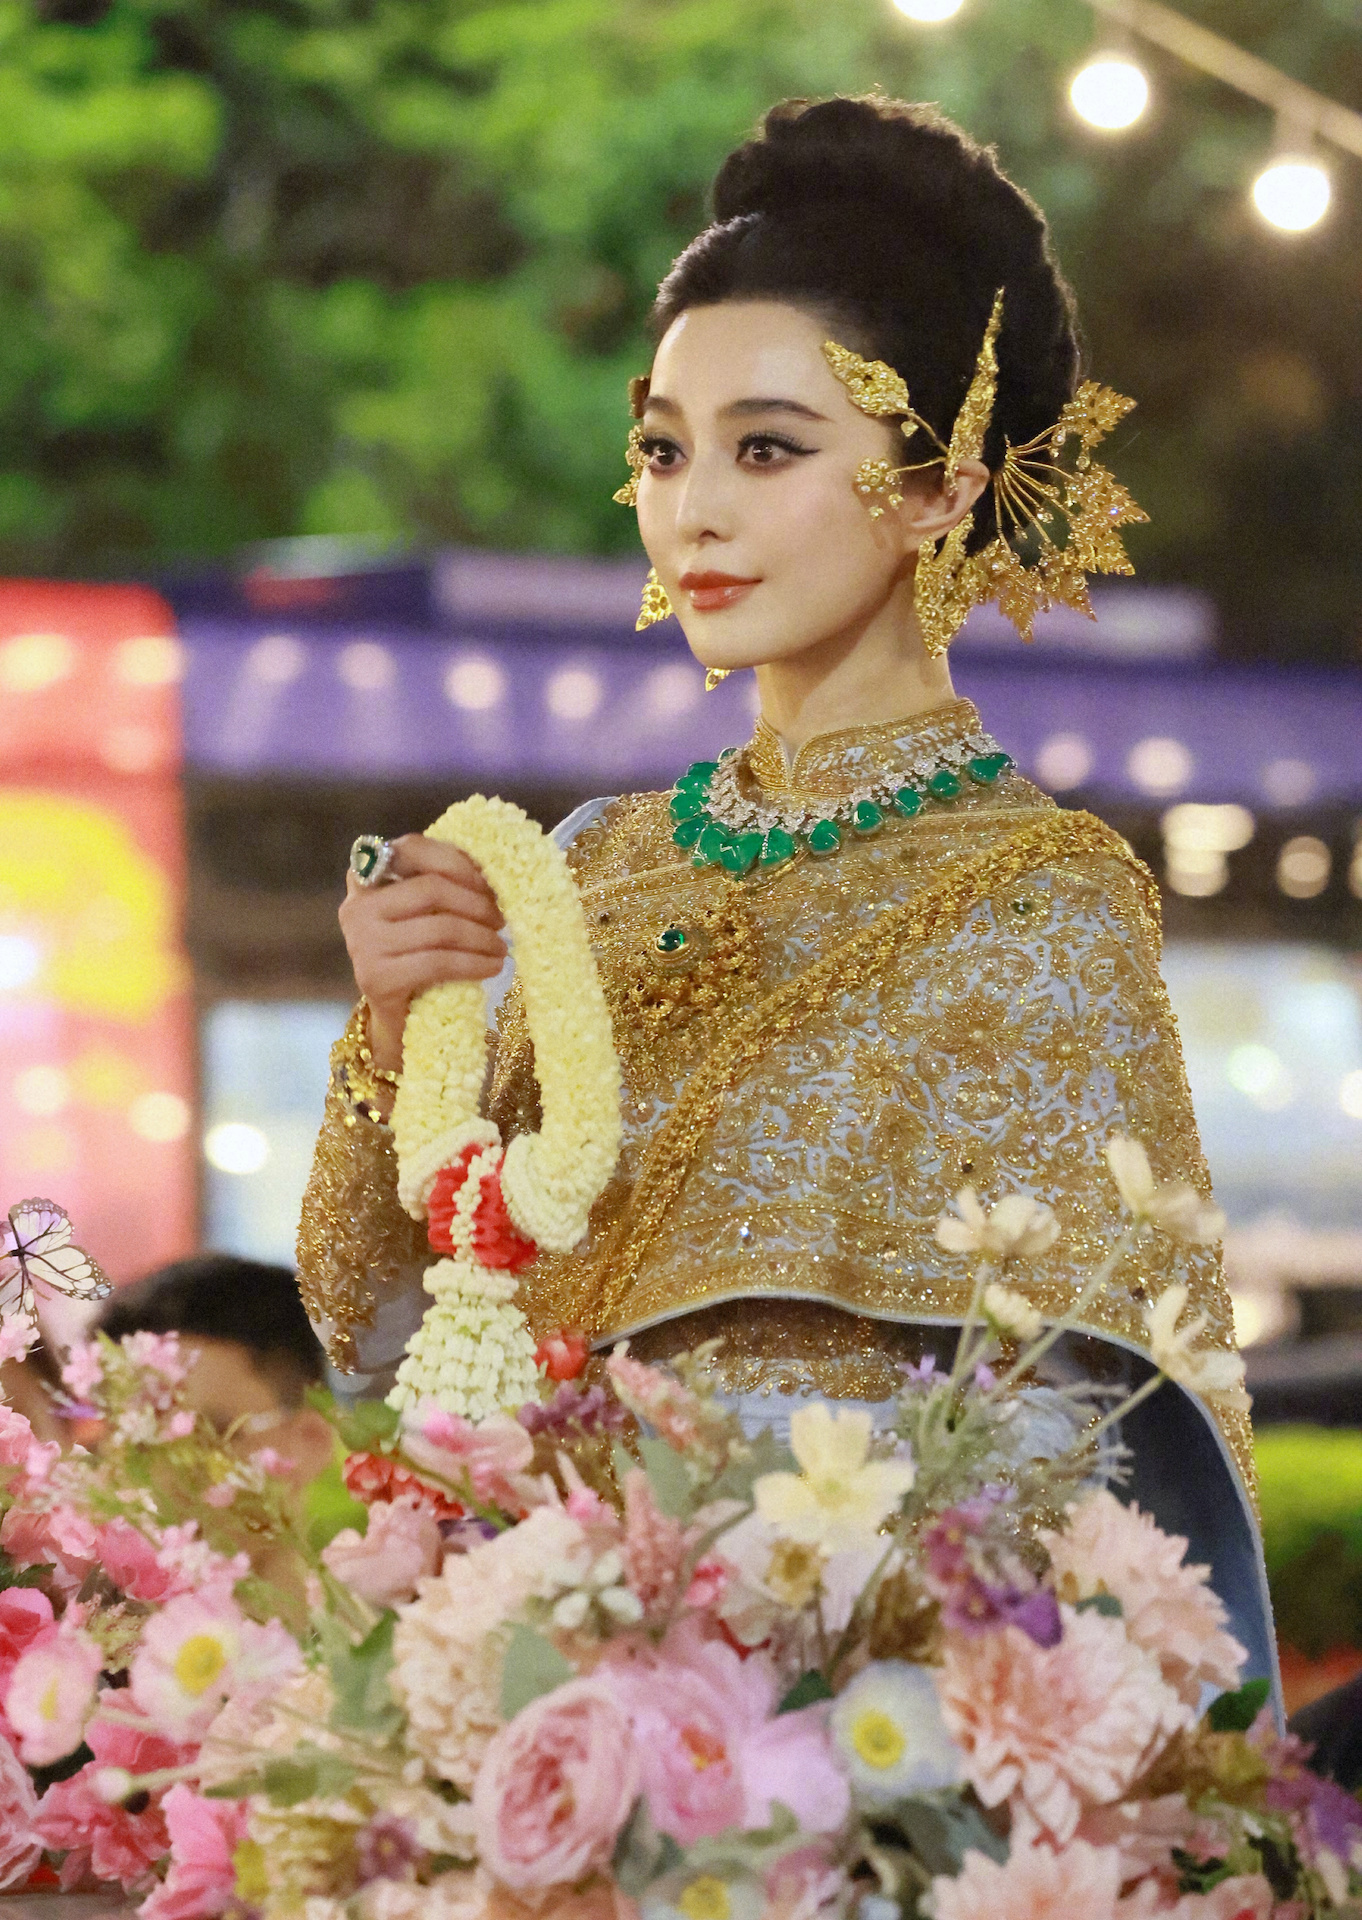 Trên trang cá nhân, Phạm Băng Băng cũng chia sẻ loạt khoảnh khắc đẹp tại lễ hội và bày tỏ sự thích thú khi tham gia sự kiện. Ngôi sao xứ Trung ấn tượng bởi sự nhiệt tình của người Thái, trang phục truyền thống đẹp mắt cùng món gỏi đu đủ xanh.